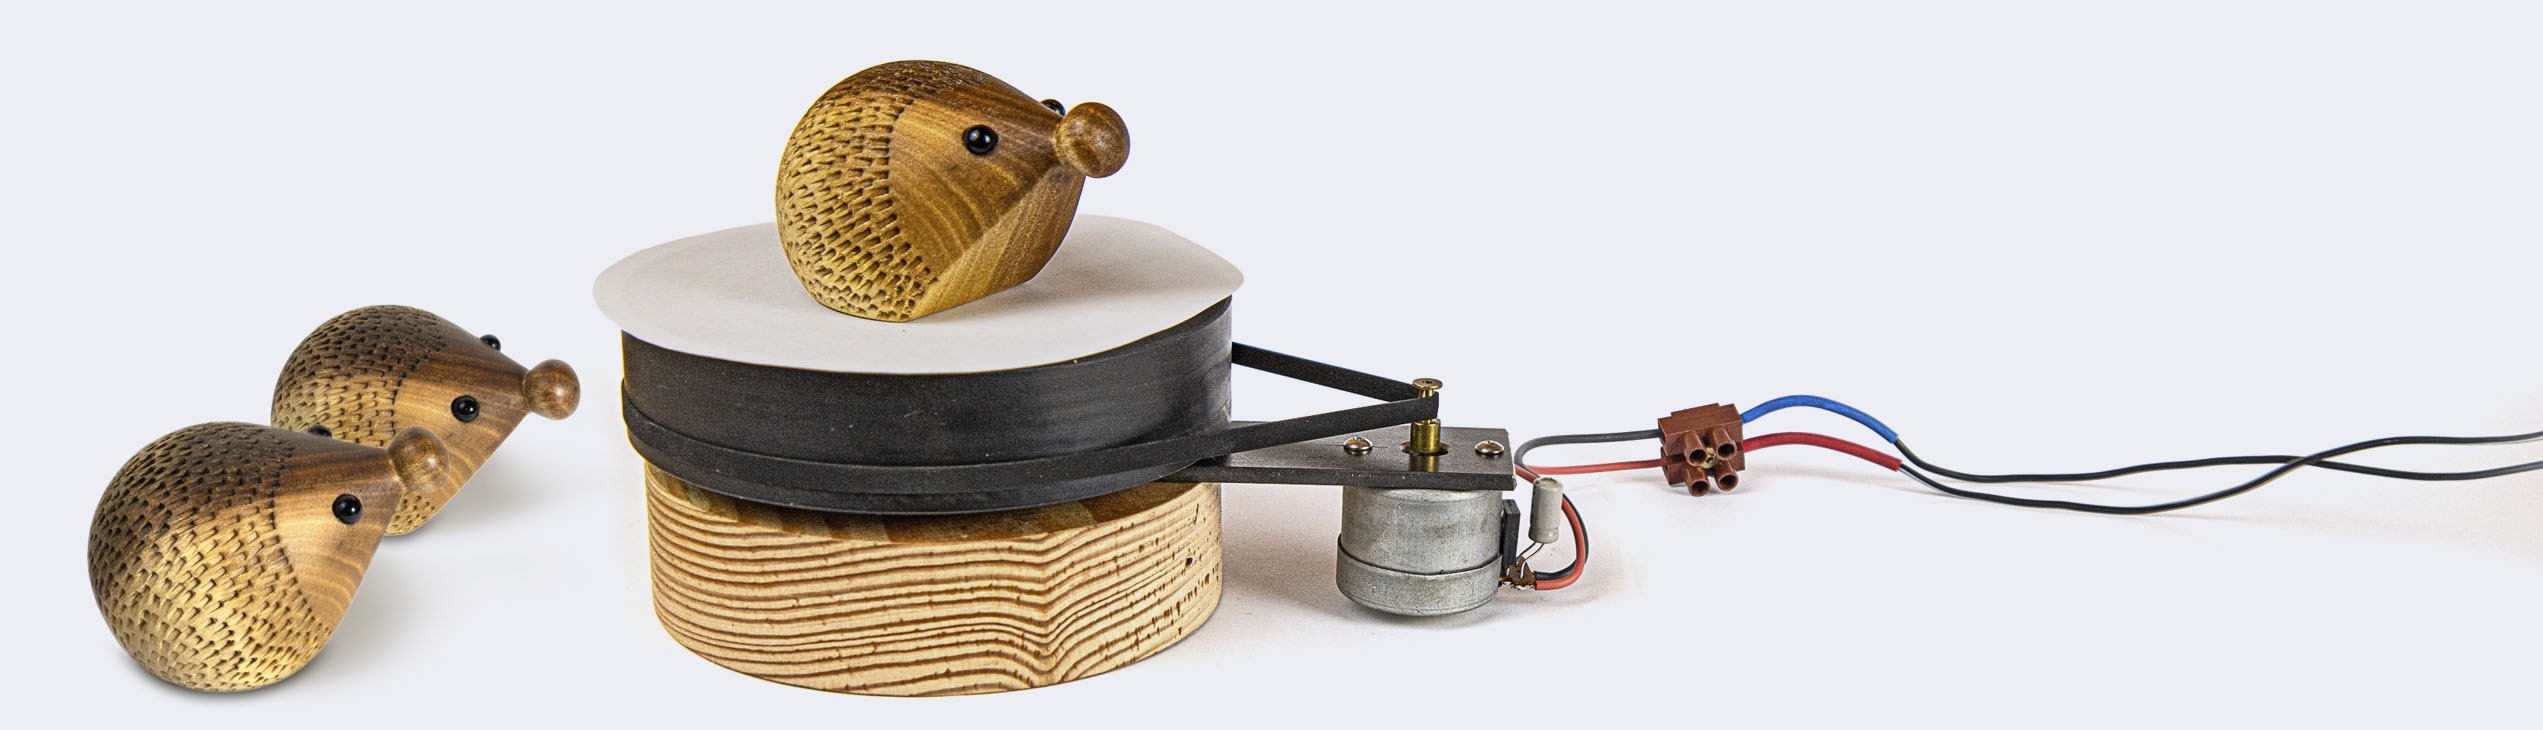 Ein Igel zum Filmen auf einem Drehteller. Dieser wird von einem alten Schallplattenspieler-Motor angetrieben.